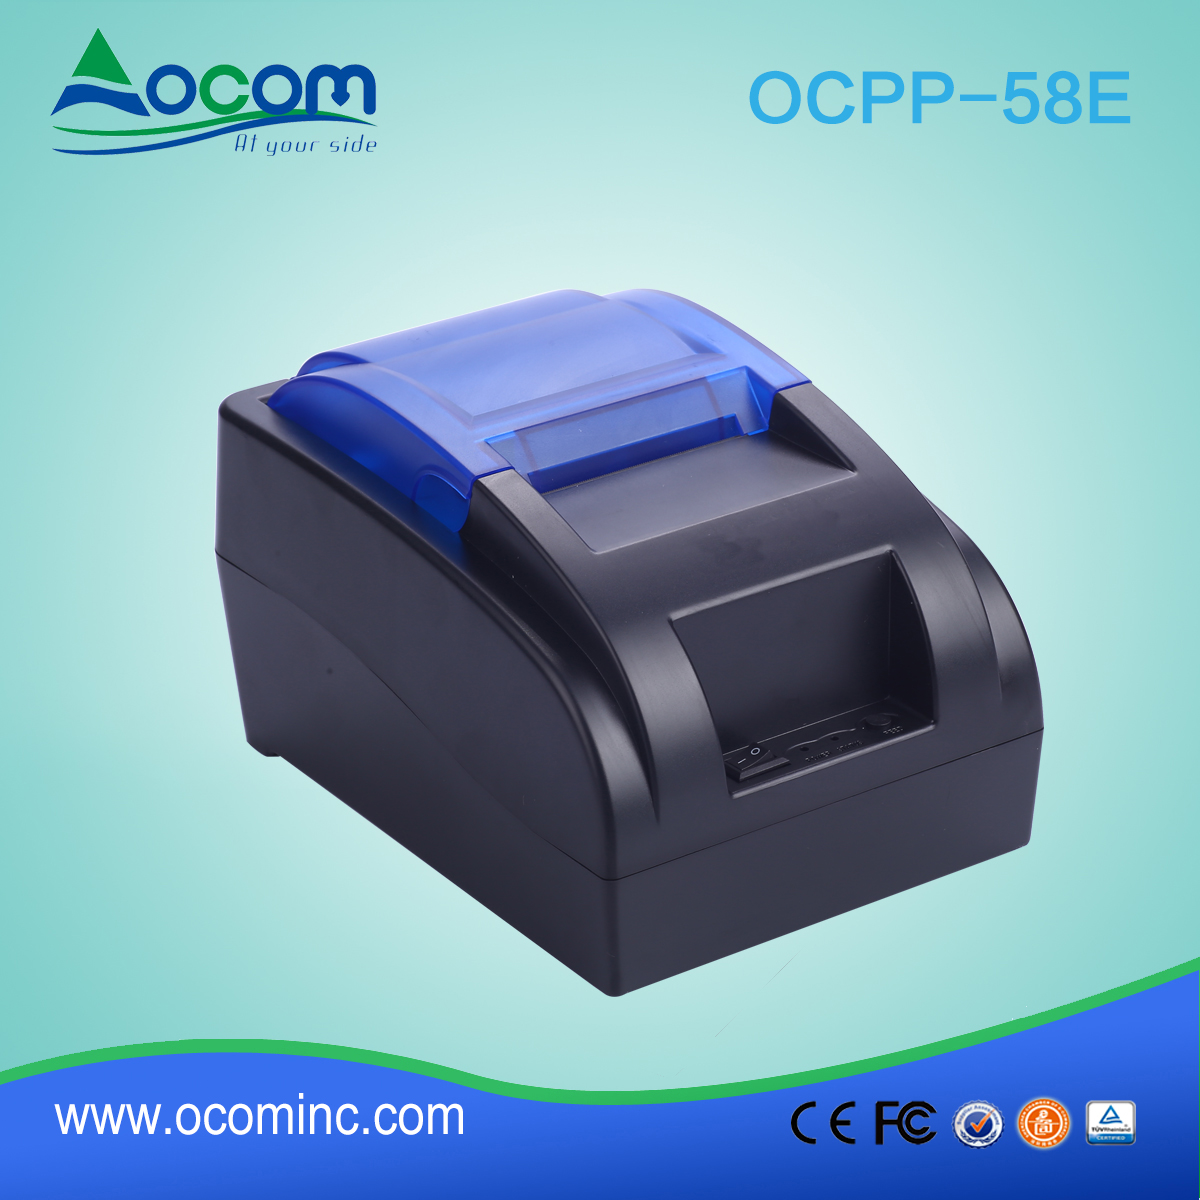 OCPP-58E-China ha realizzato una stampante POS da 58 mm a basso costo con opzione Bluetooth o WIFI